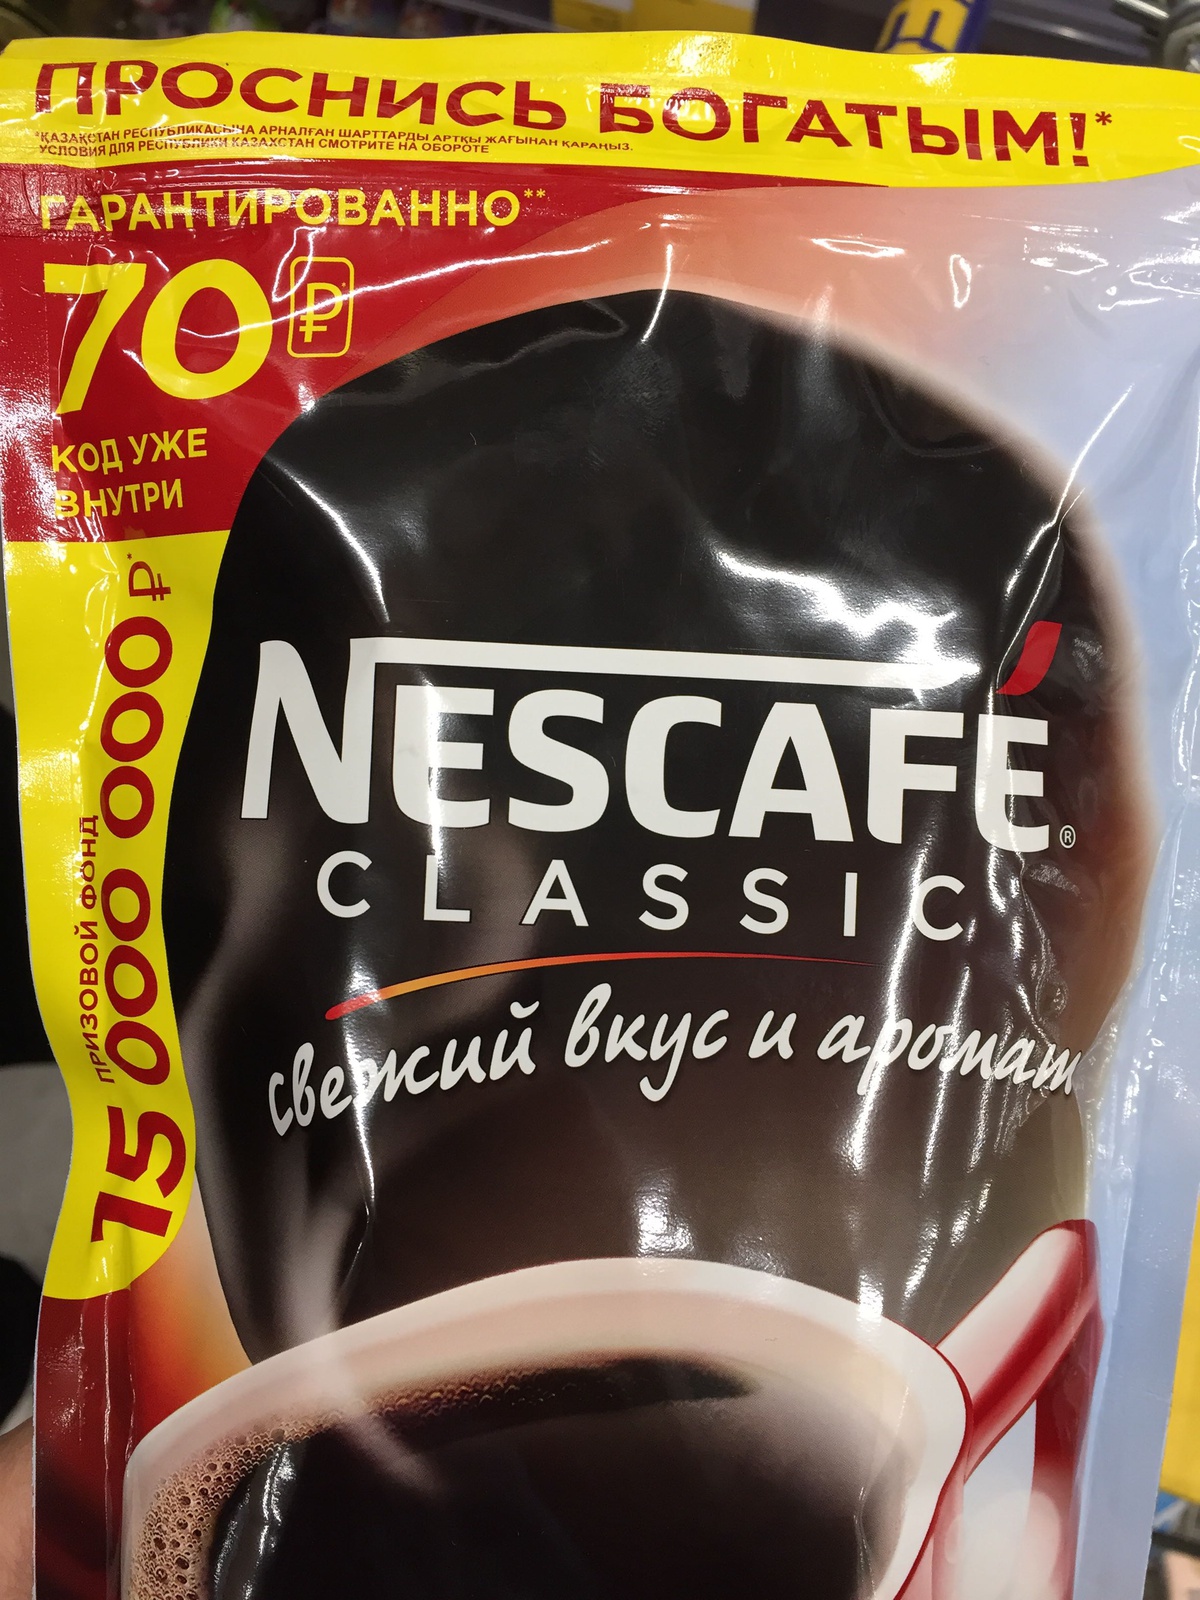 Акция от Nescafe стань богаче на миллион рублей